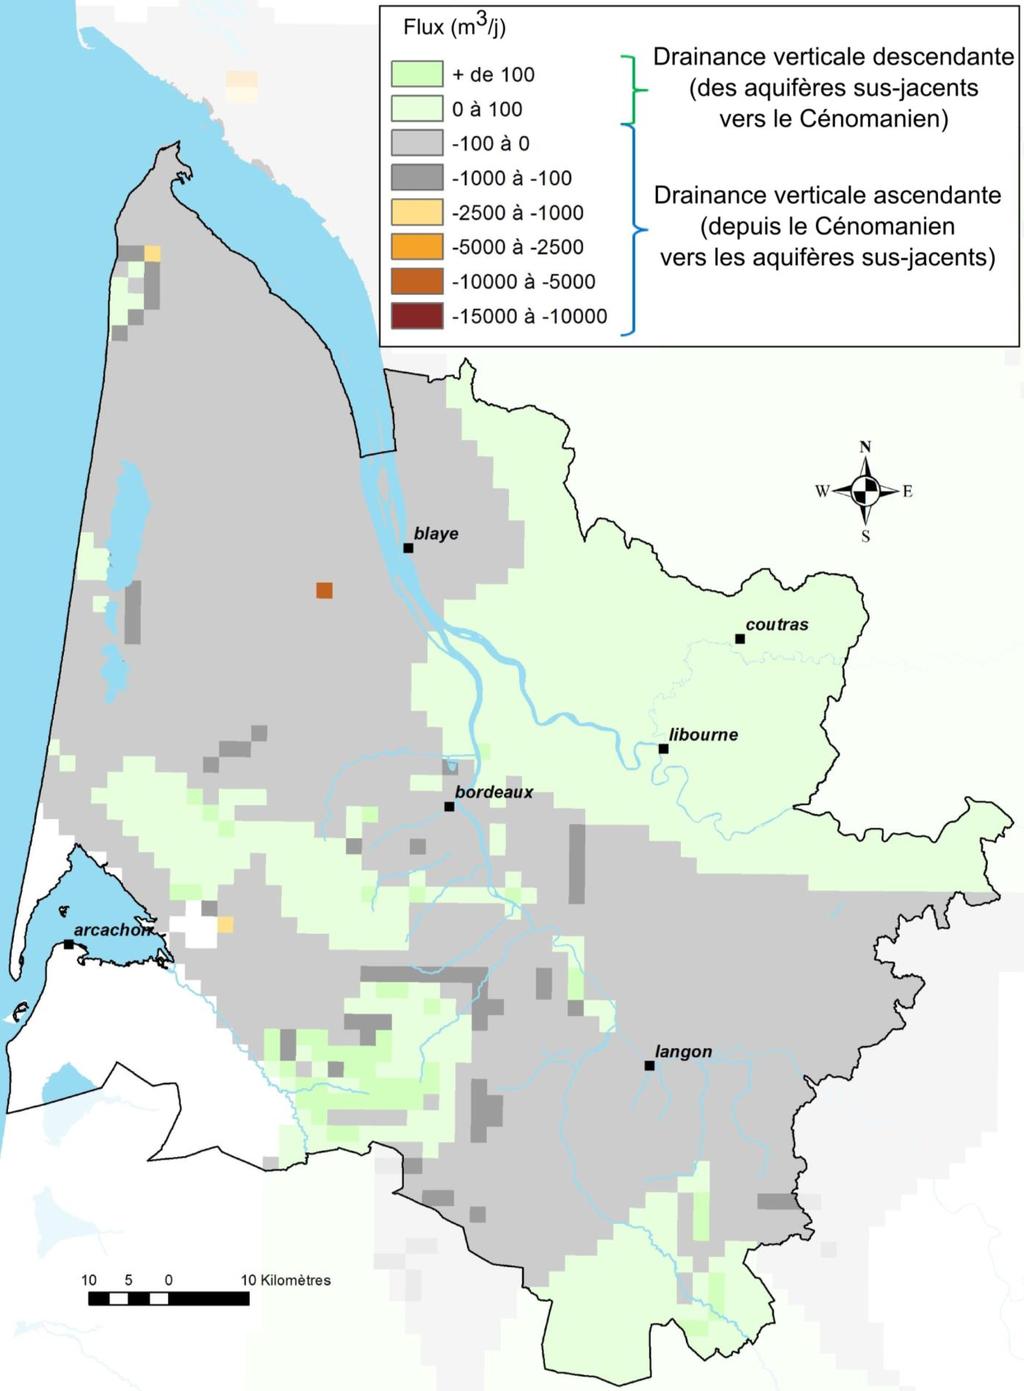 Cabanac-etvillagrains Illustration 18 - Les zones d exutoires indirects du Cénomanien (flux à la maille de 4 km²).